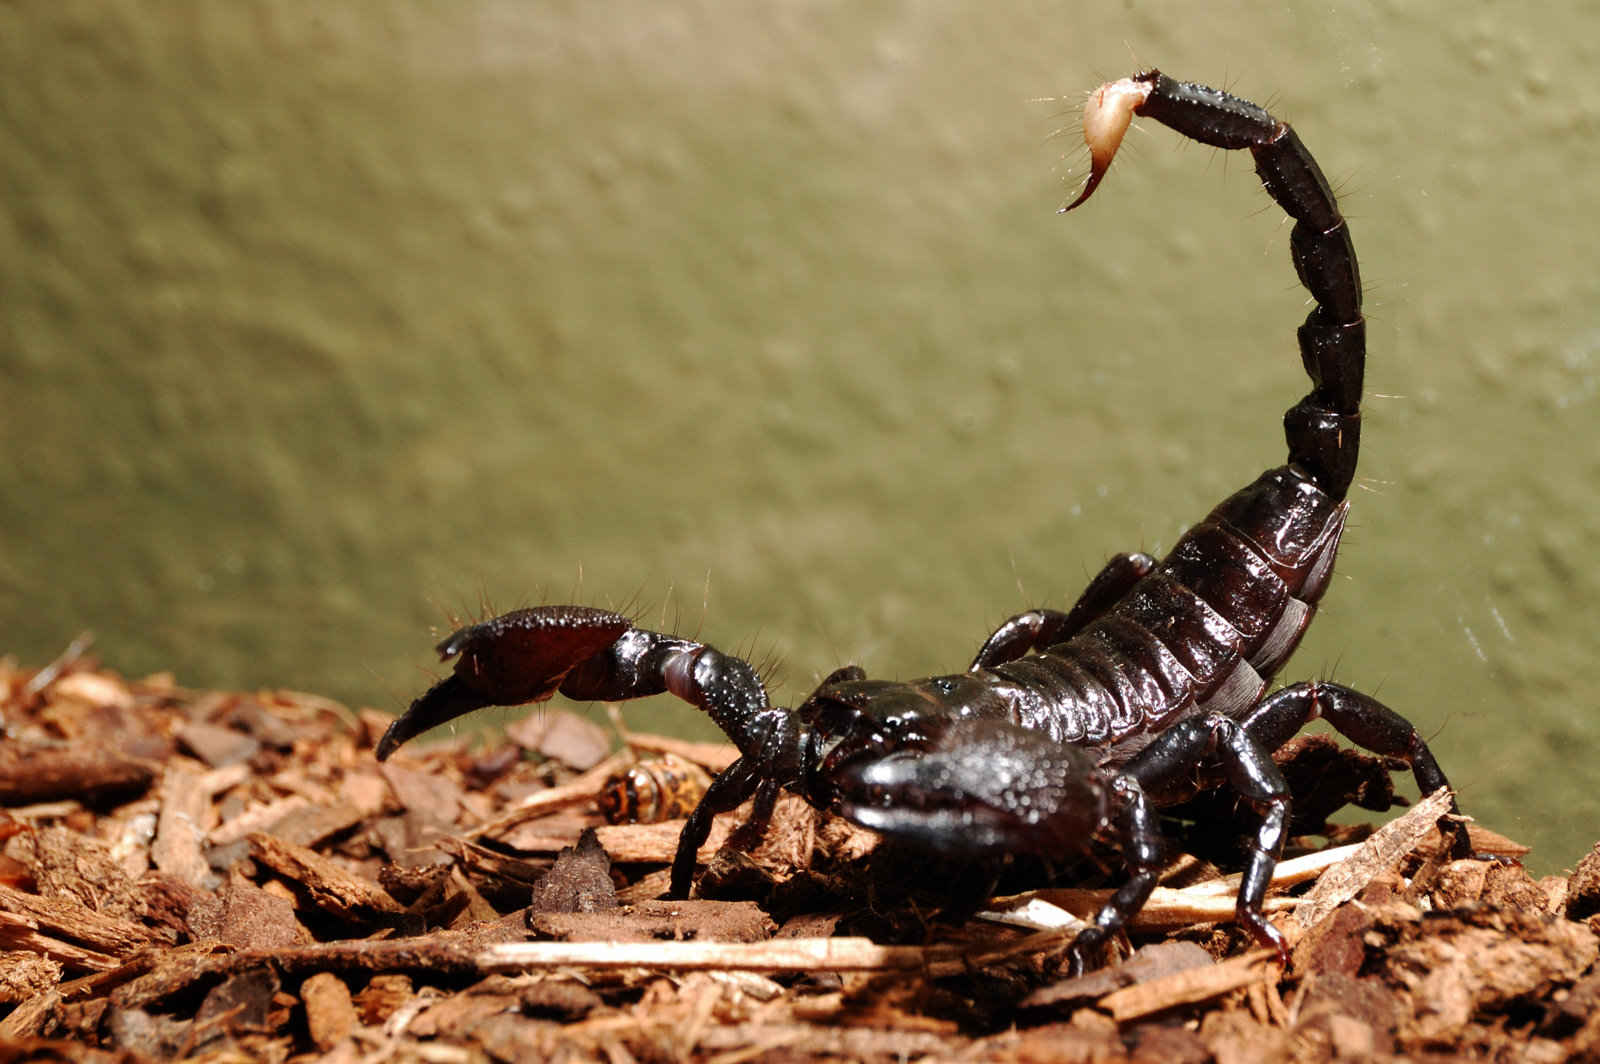 Ukuhunyushwa kwephupho mayelana ne-scorpion ehlaba indoda